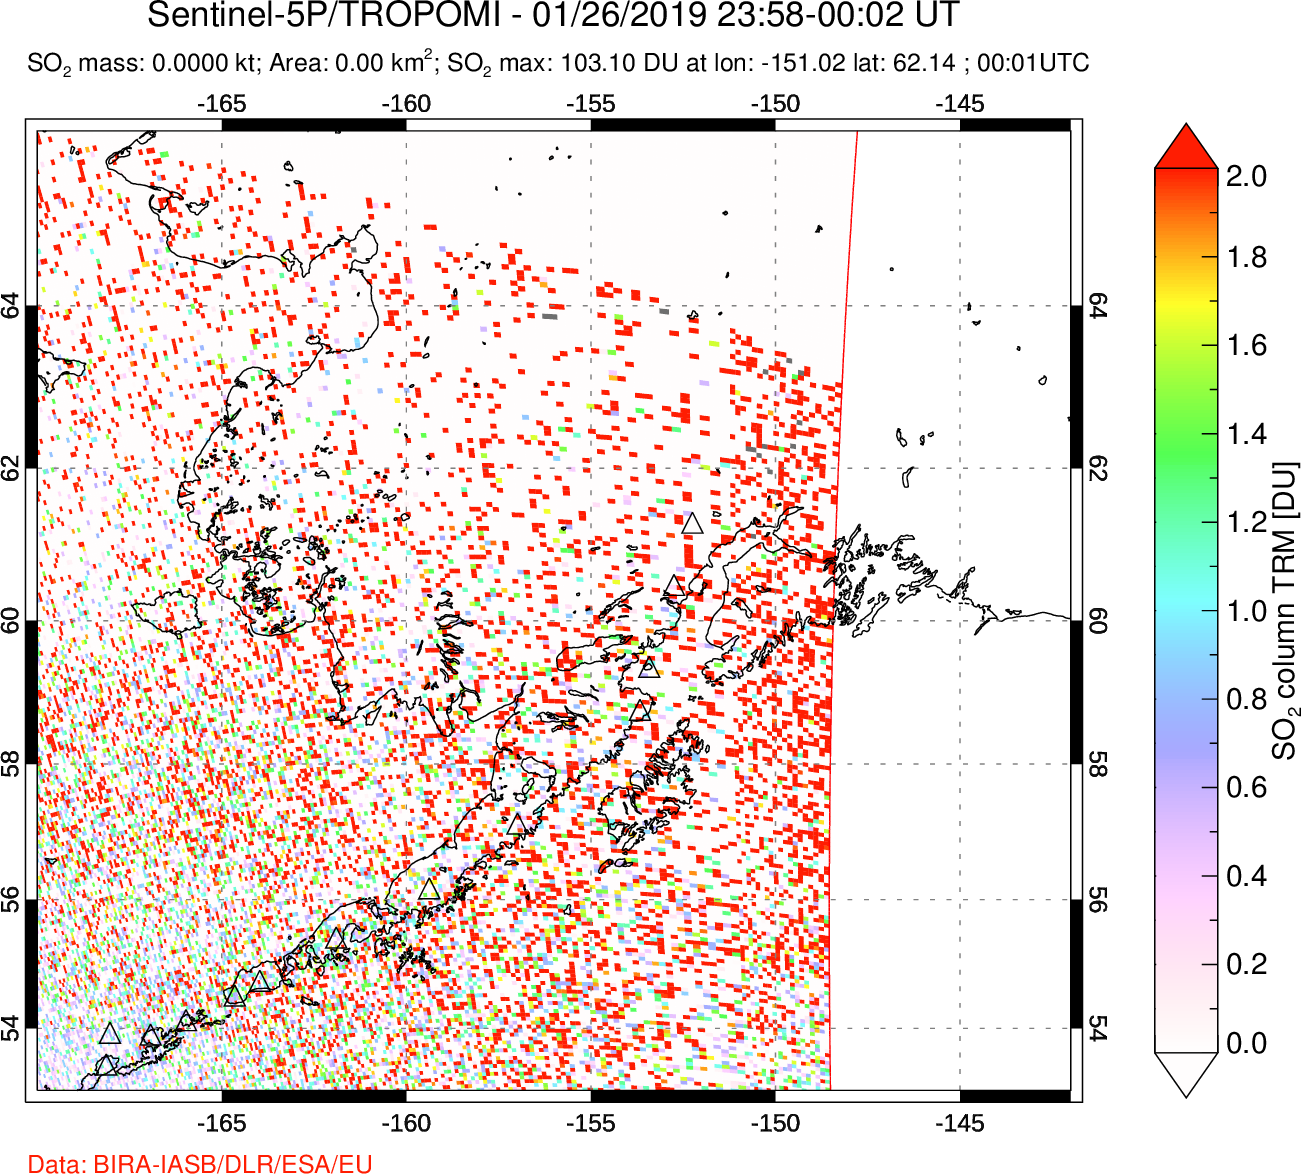 A sulfur dioxide image over Alaska, USA on Jan 26, 2019.